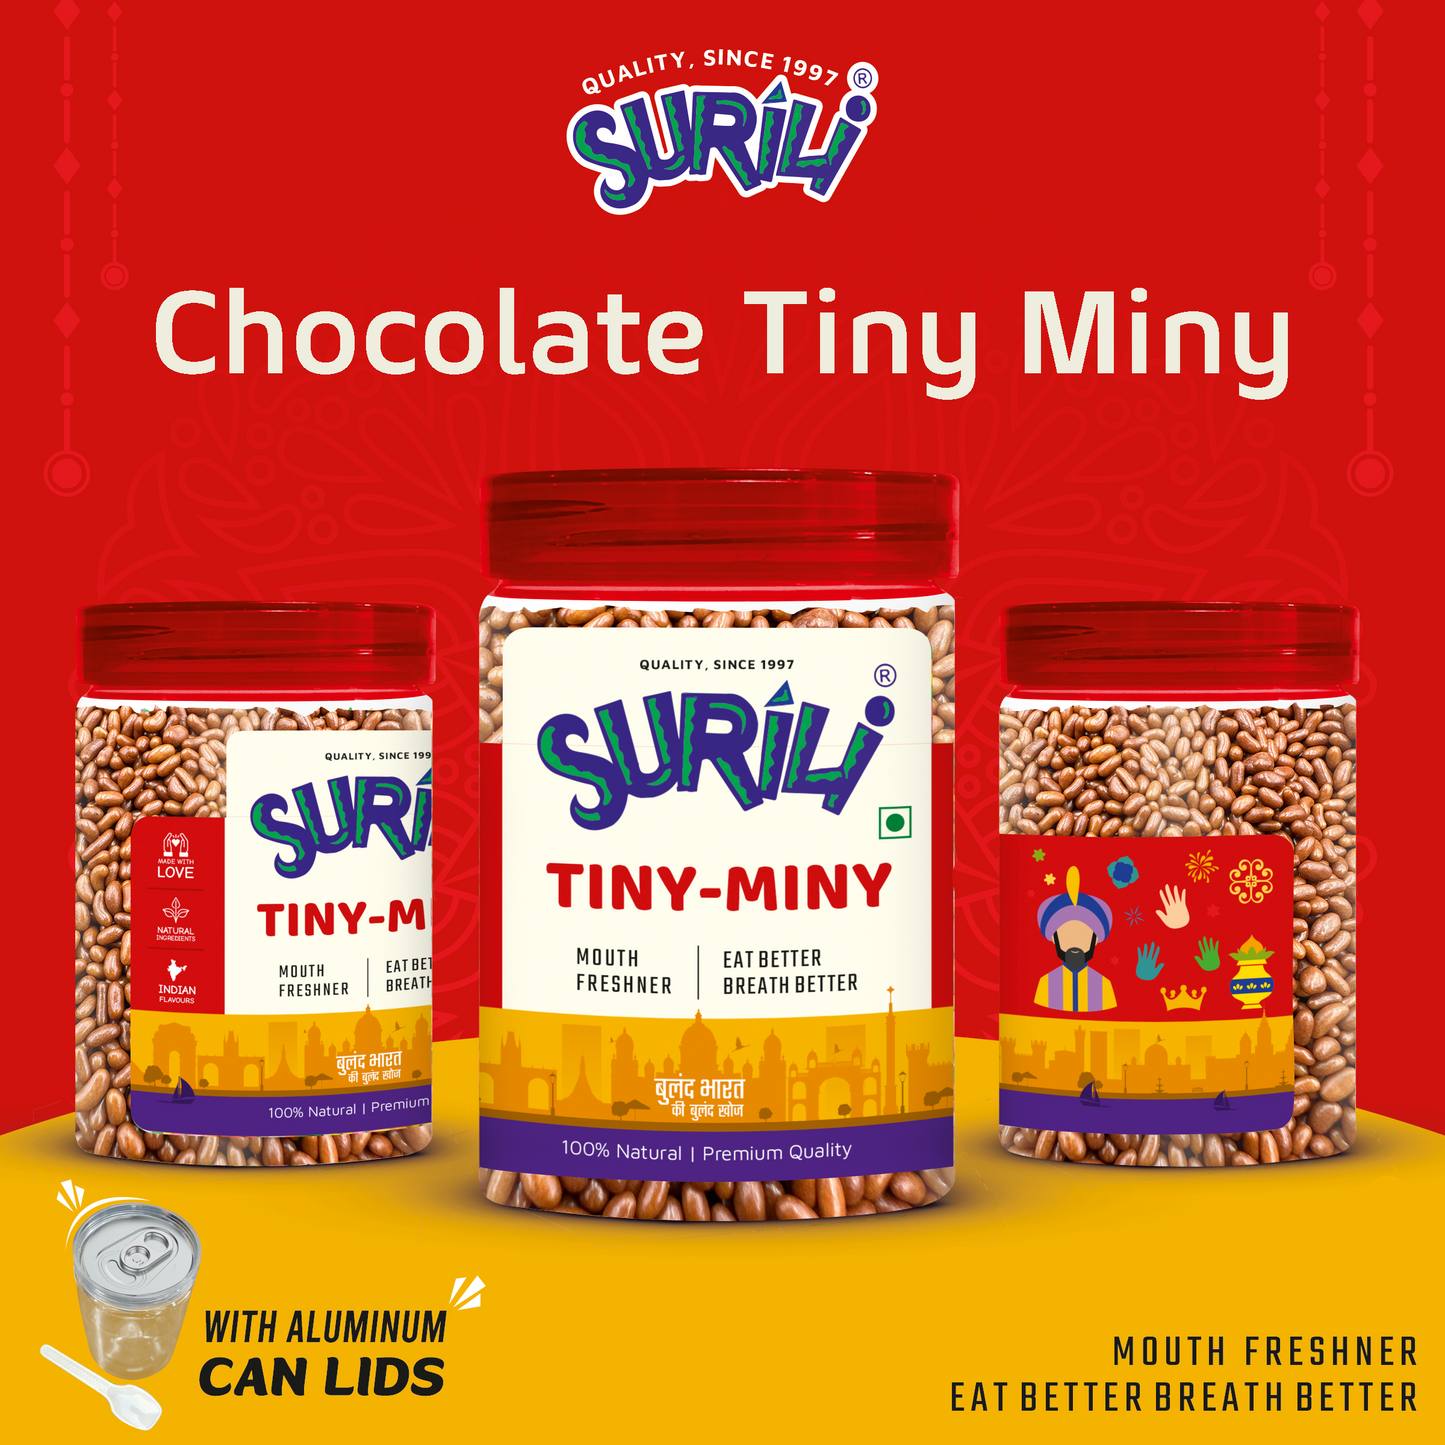 Chocolate Tiny Miny